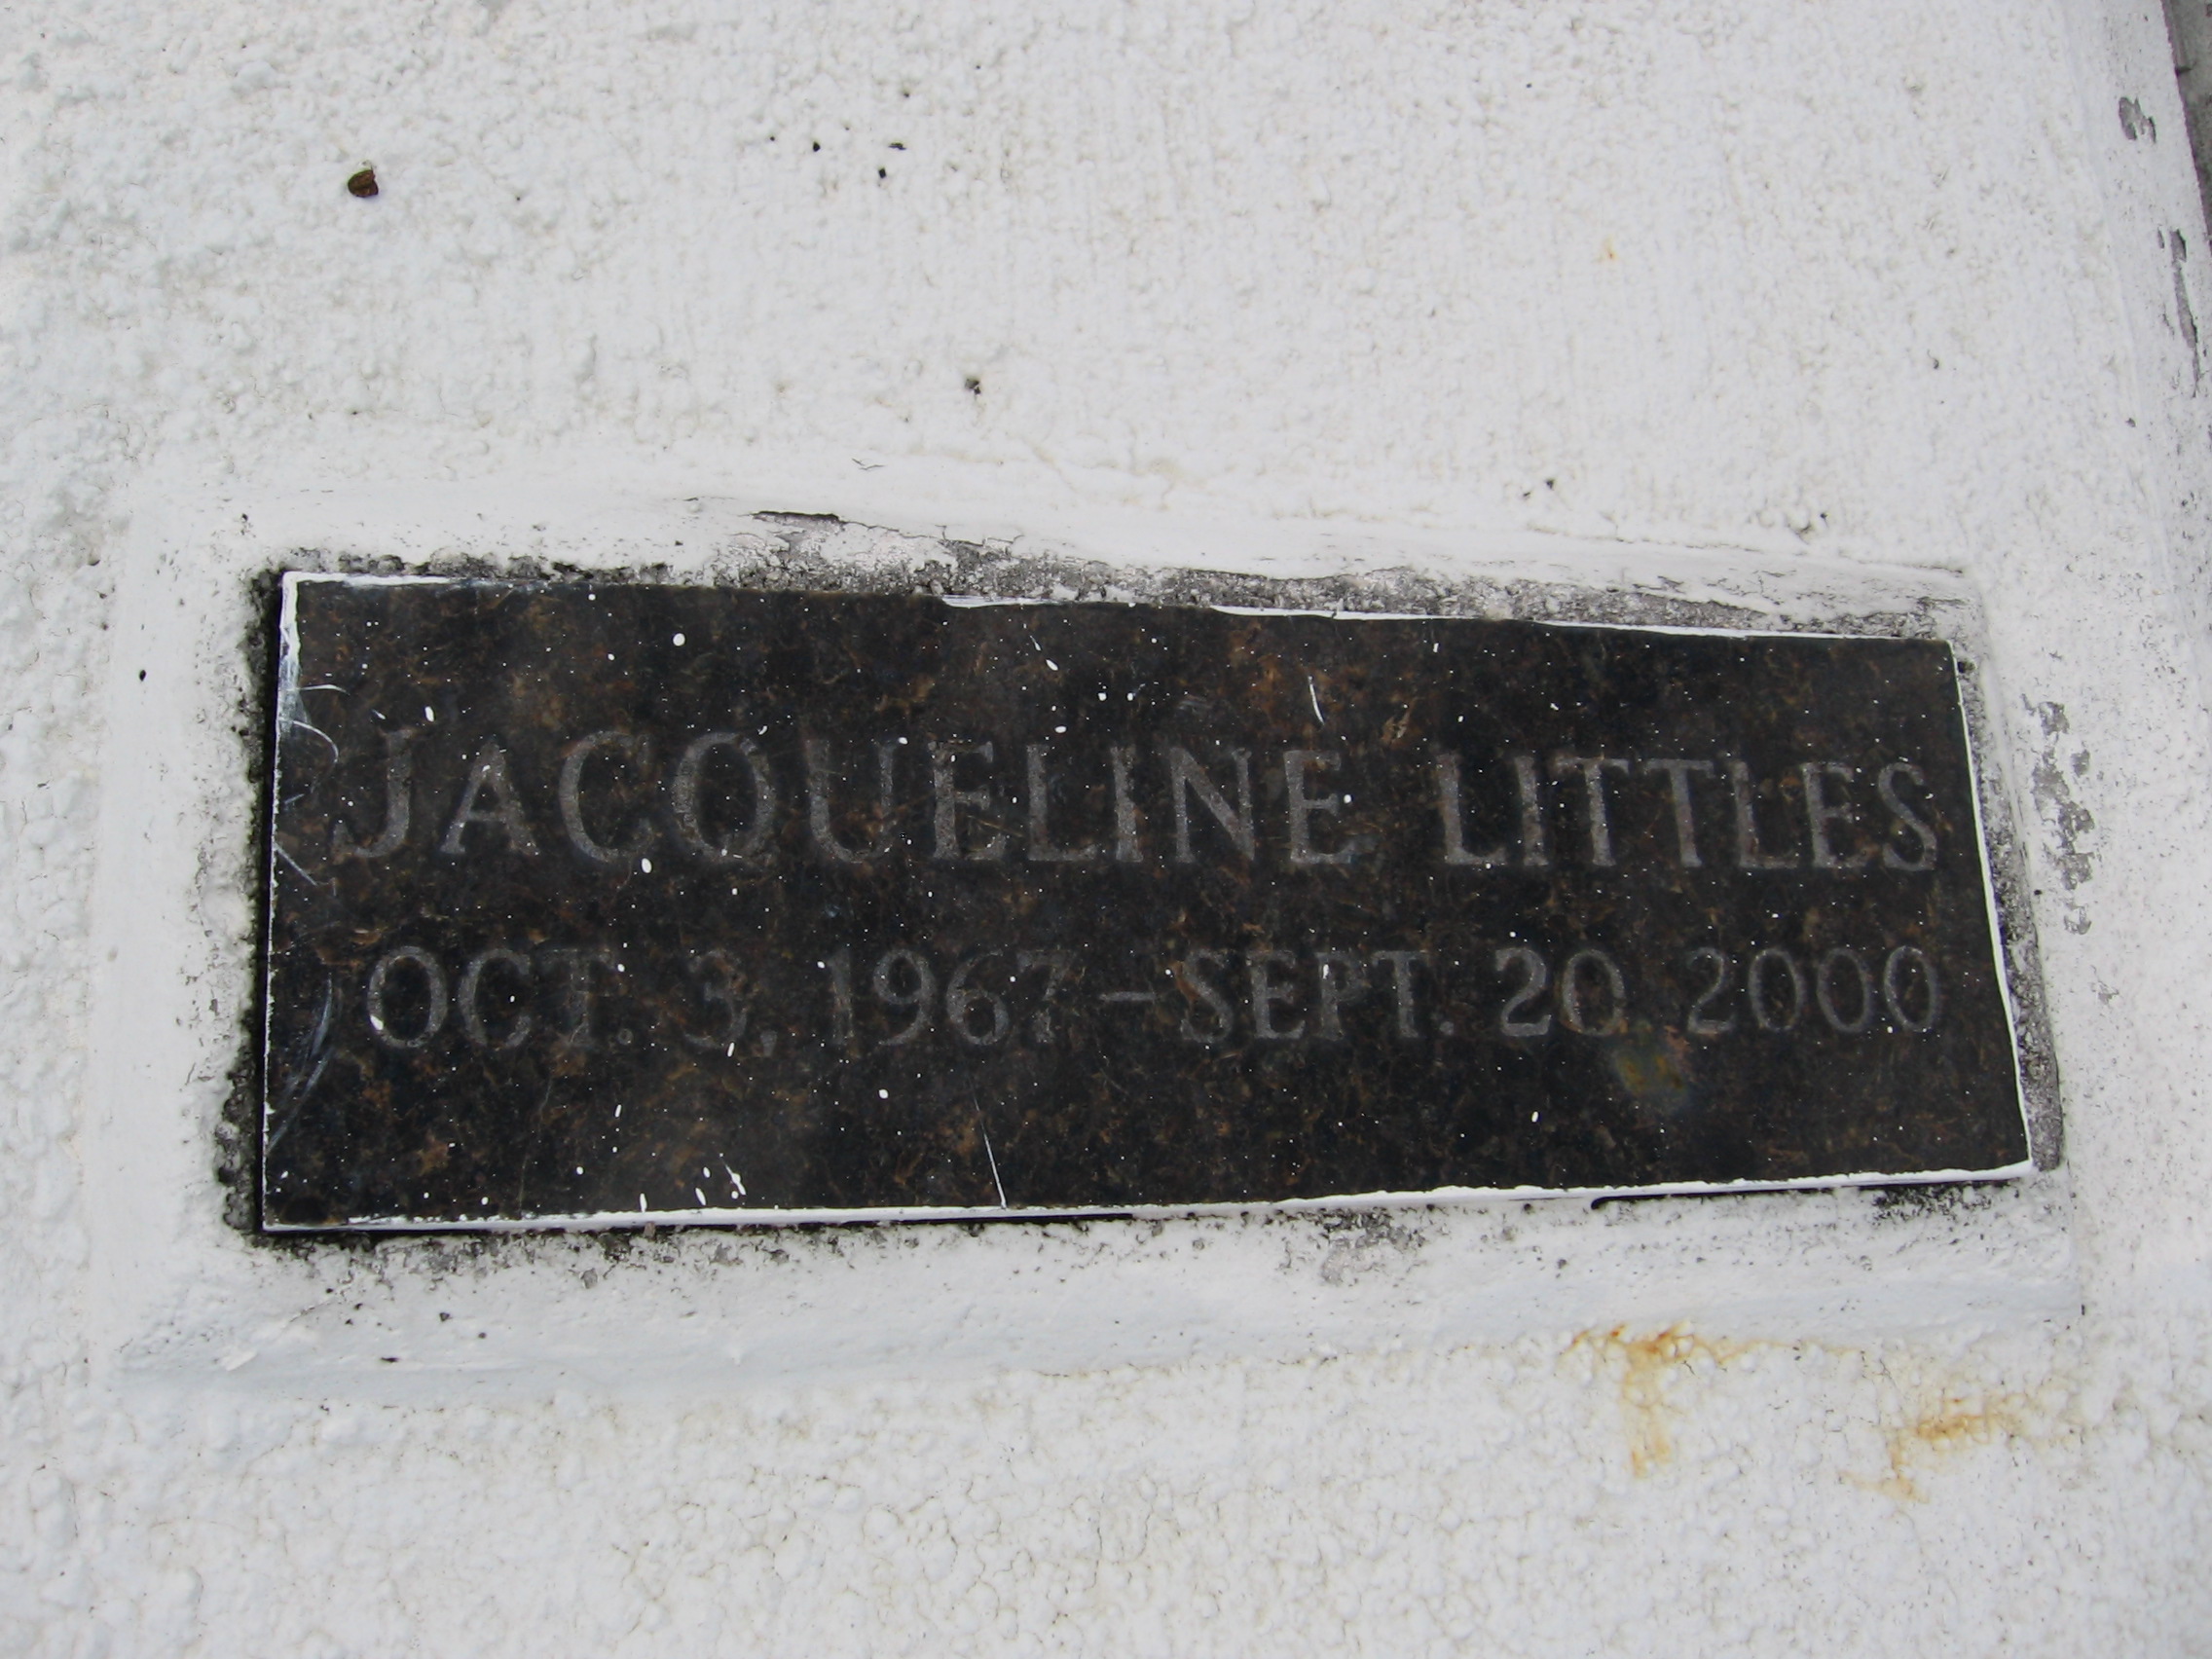 Jacqueline Littles